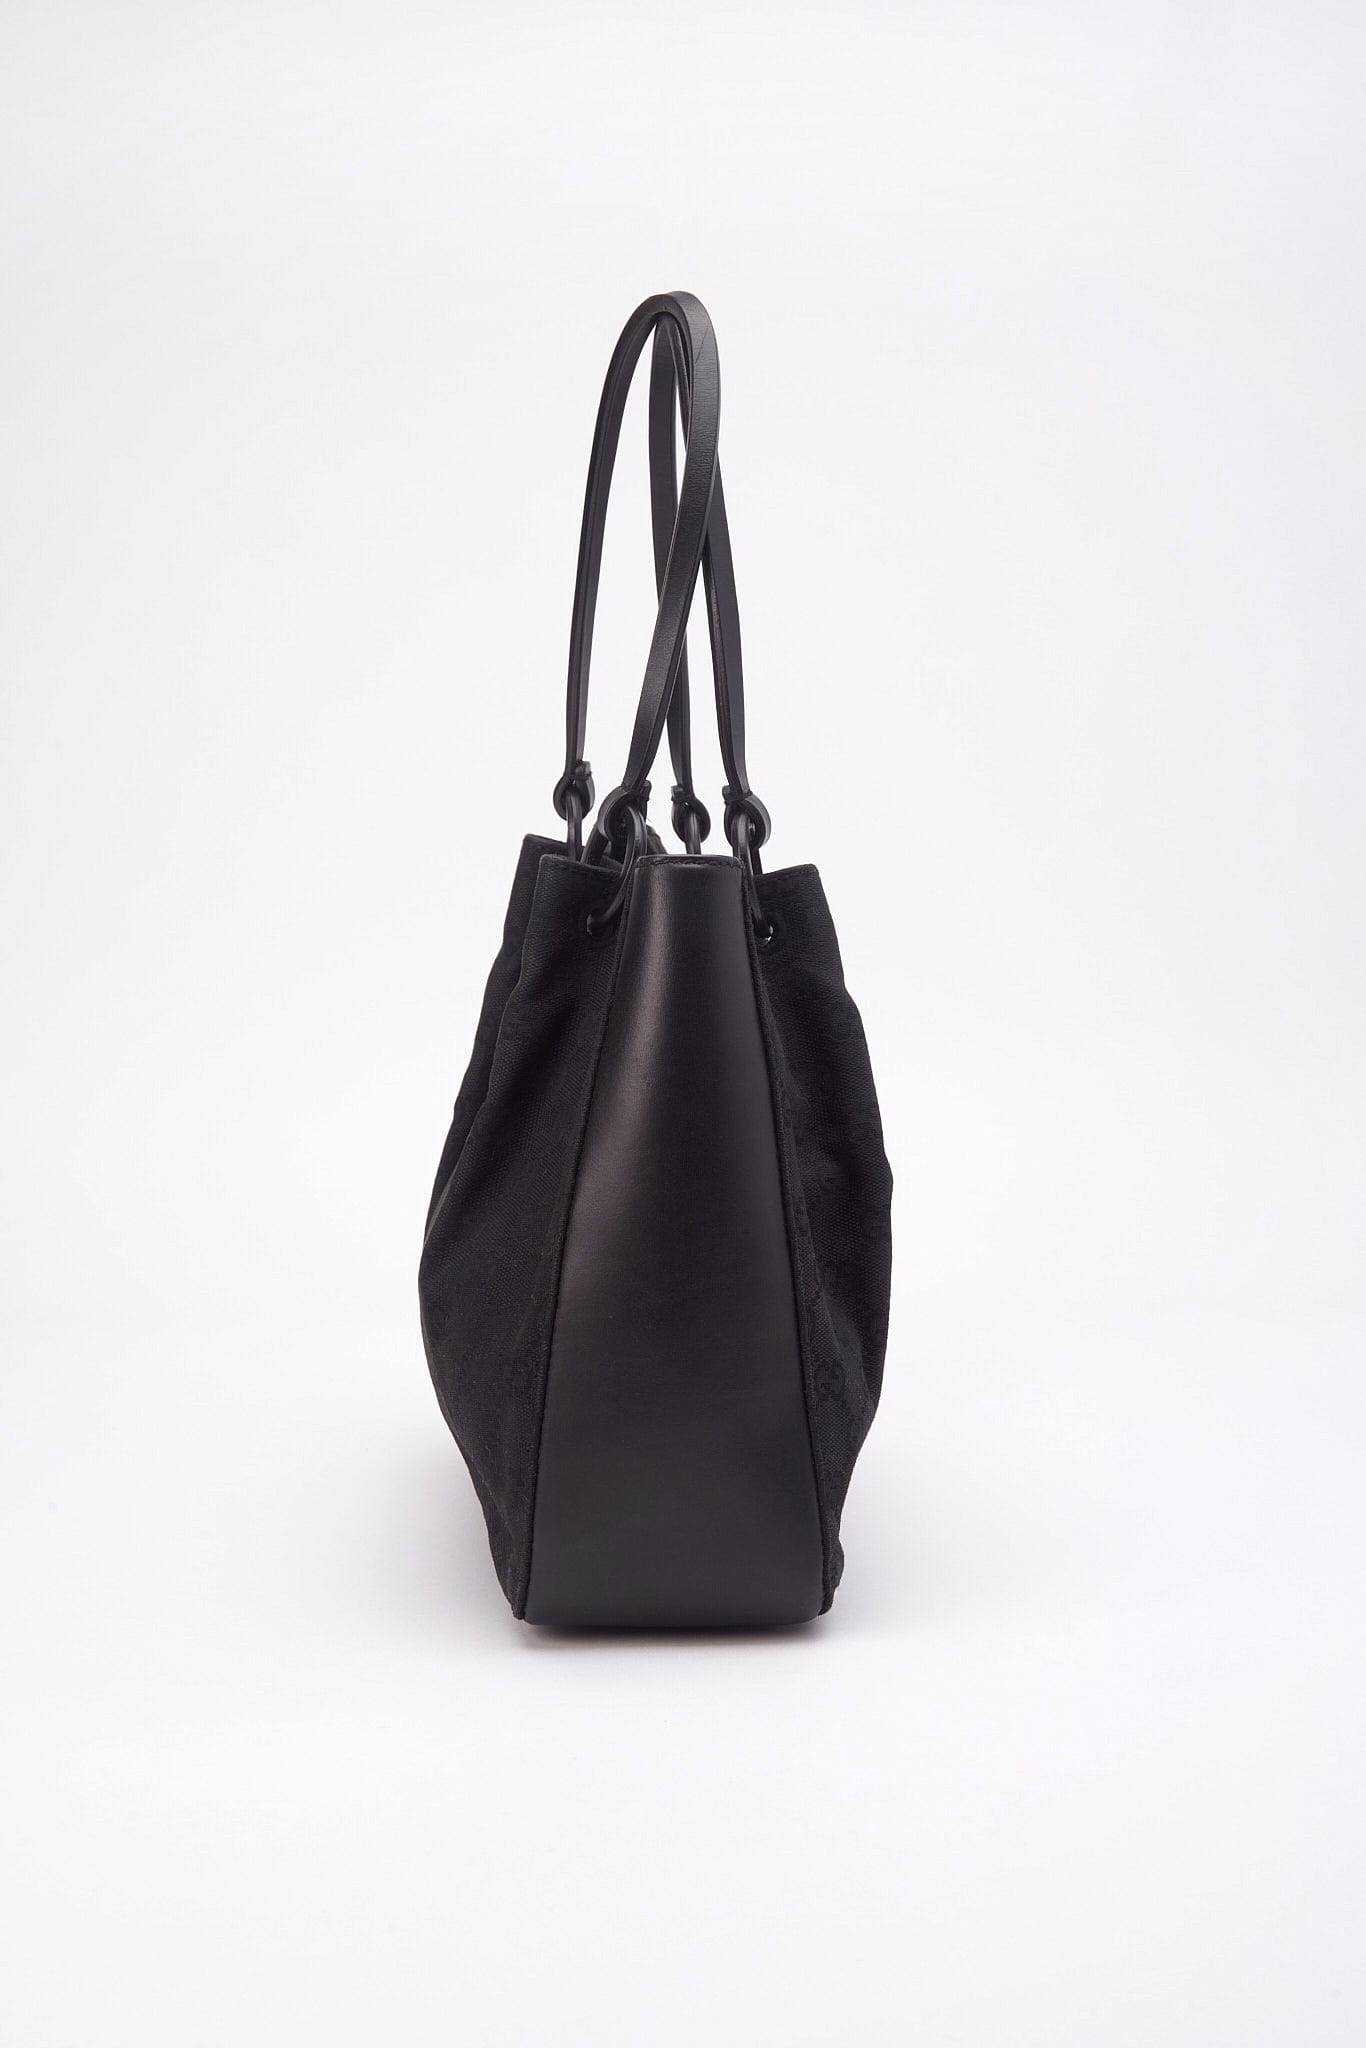 Vintage Gucci Black Canvas Shoulder Bag